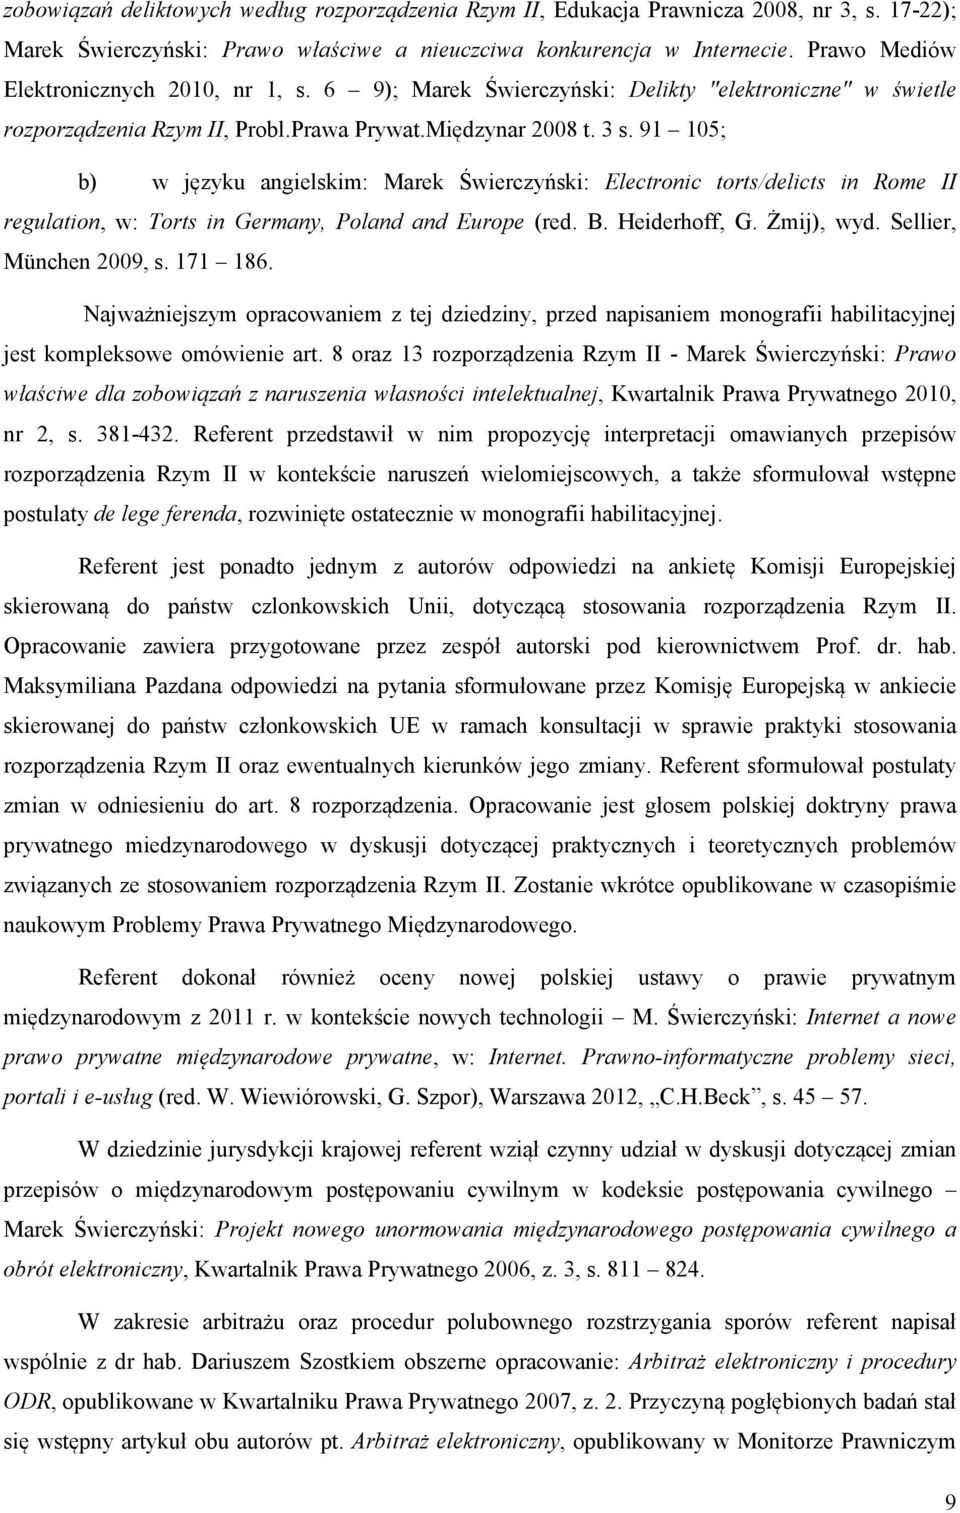 91 105; b) w języku angielskim: Marek Świerczyński: Electronic torts/delicts in Rome II regulation, w: Torts in Germany, Poland and Europe (red. B. Heiderhoff, G. Żmij), wyd. Sellier, München 2009, s.